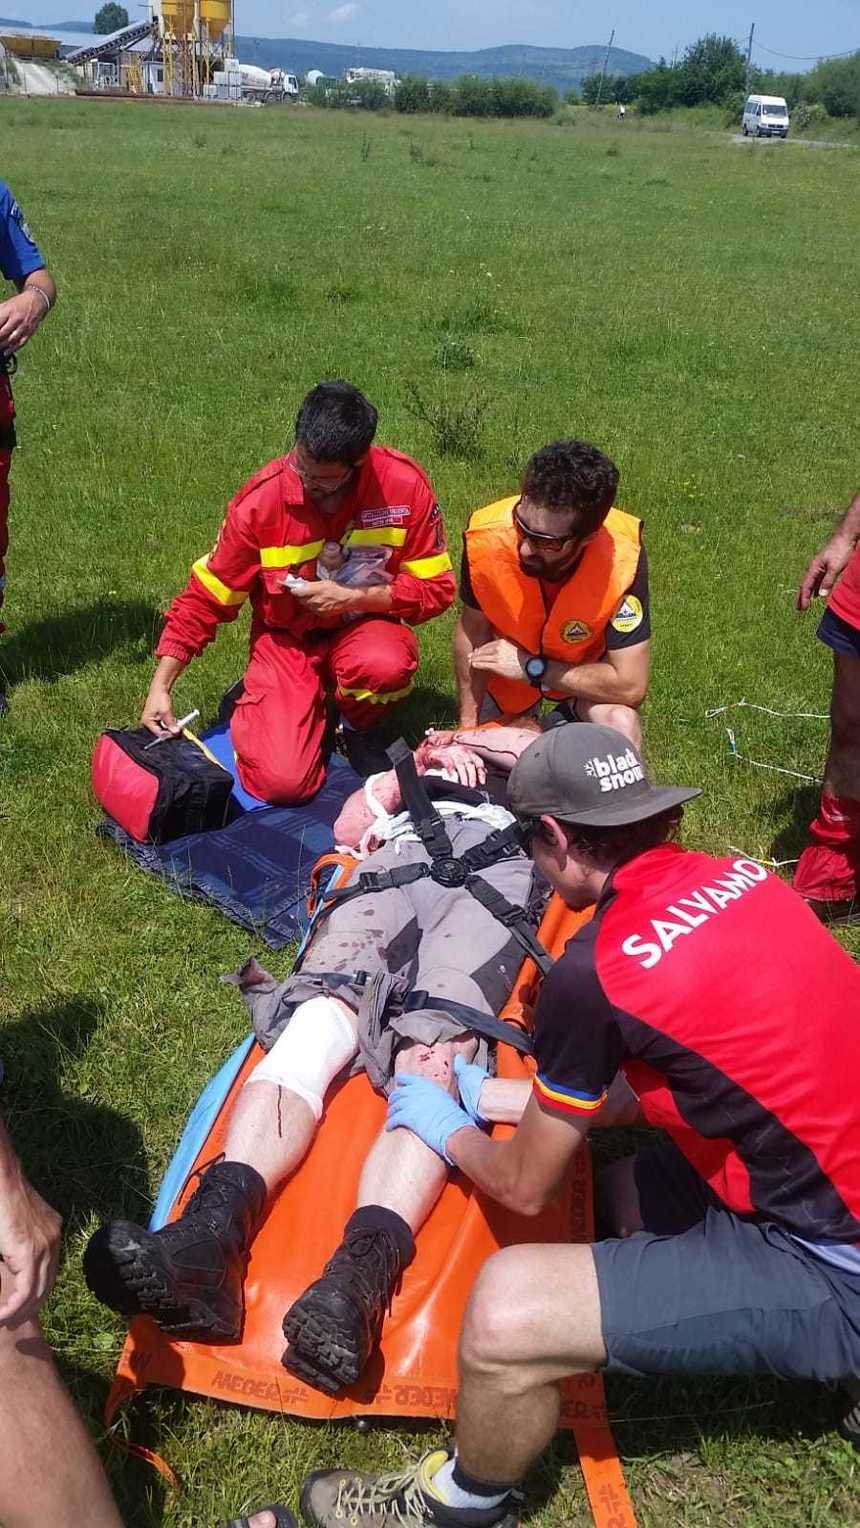  Turist ceh rănit în Munţii Făgăraş, preluat de elicopterul SMURD în stare gravă